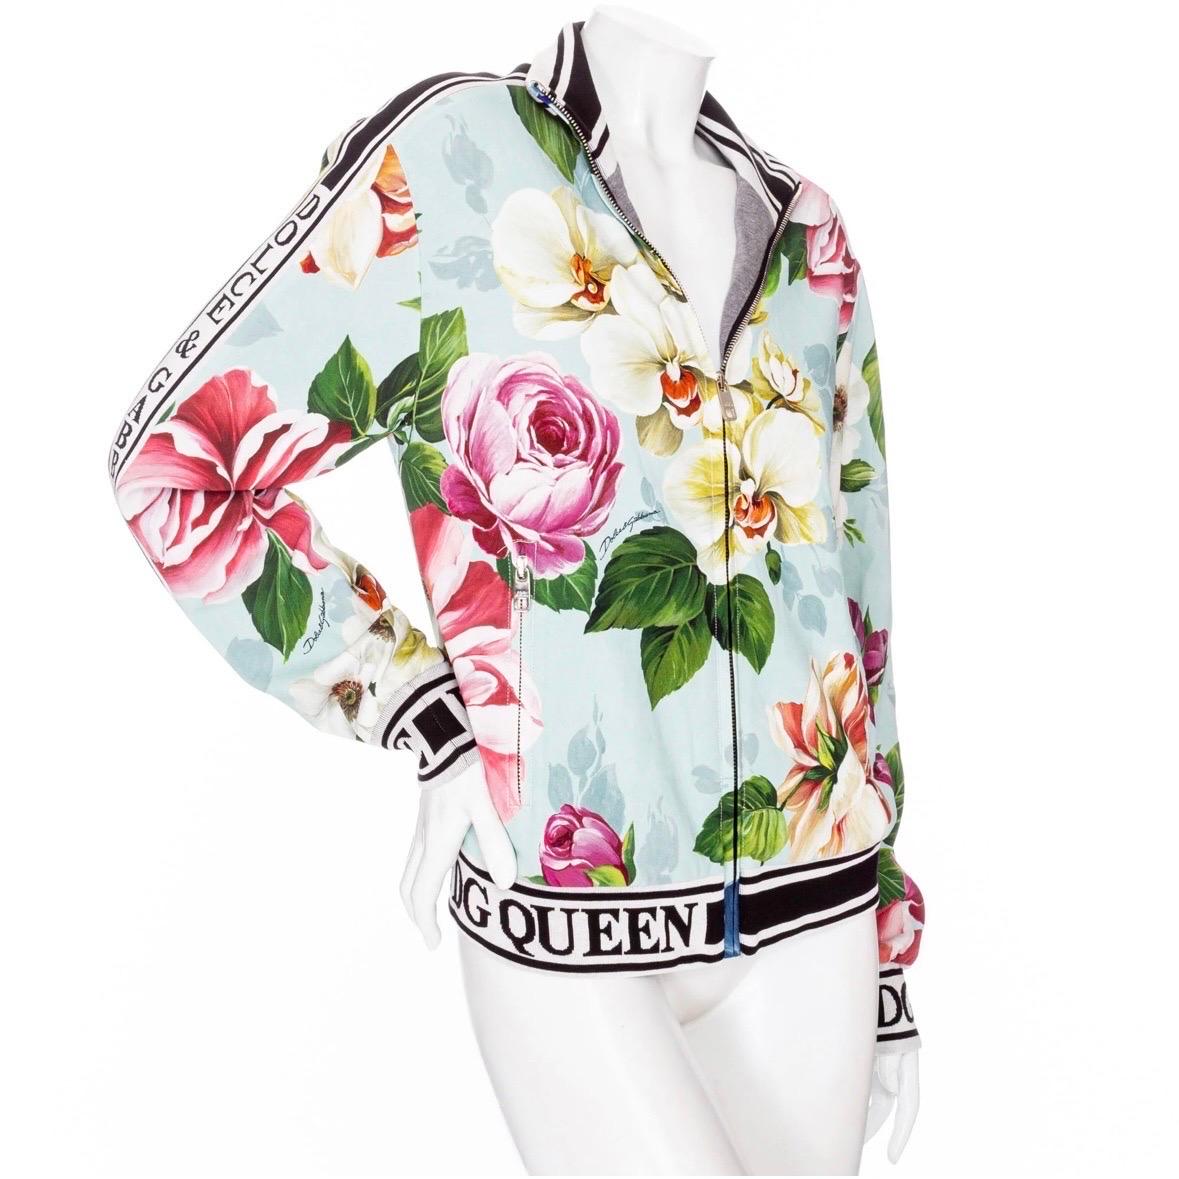 Dolce & Gabbana - Blouson bombardier à logo imprimé floral 

Multicolore : bleu, rose, vert, noir, blanc
Imprimé floral
Col baseball
Logo en jacquard à fines nervures
Fermeture à glissière sur le devant avec curseur de marque
Doublure en